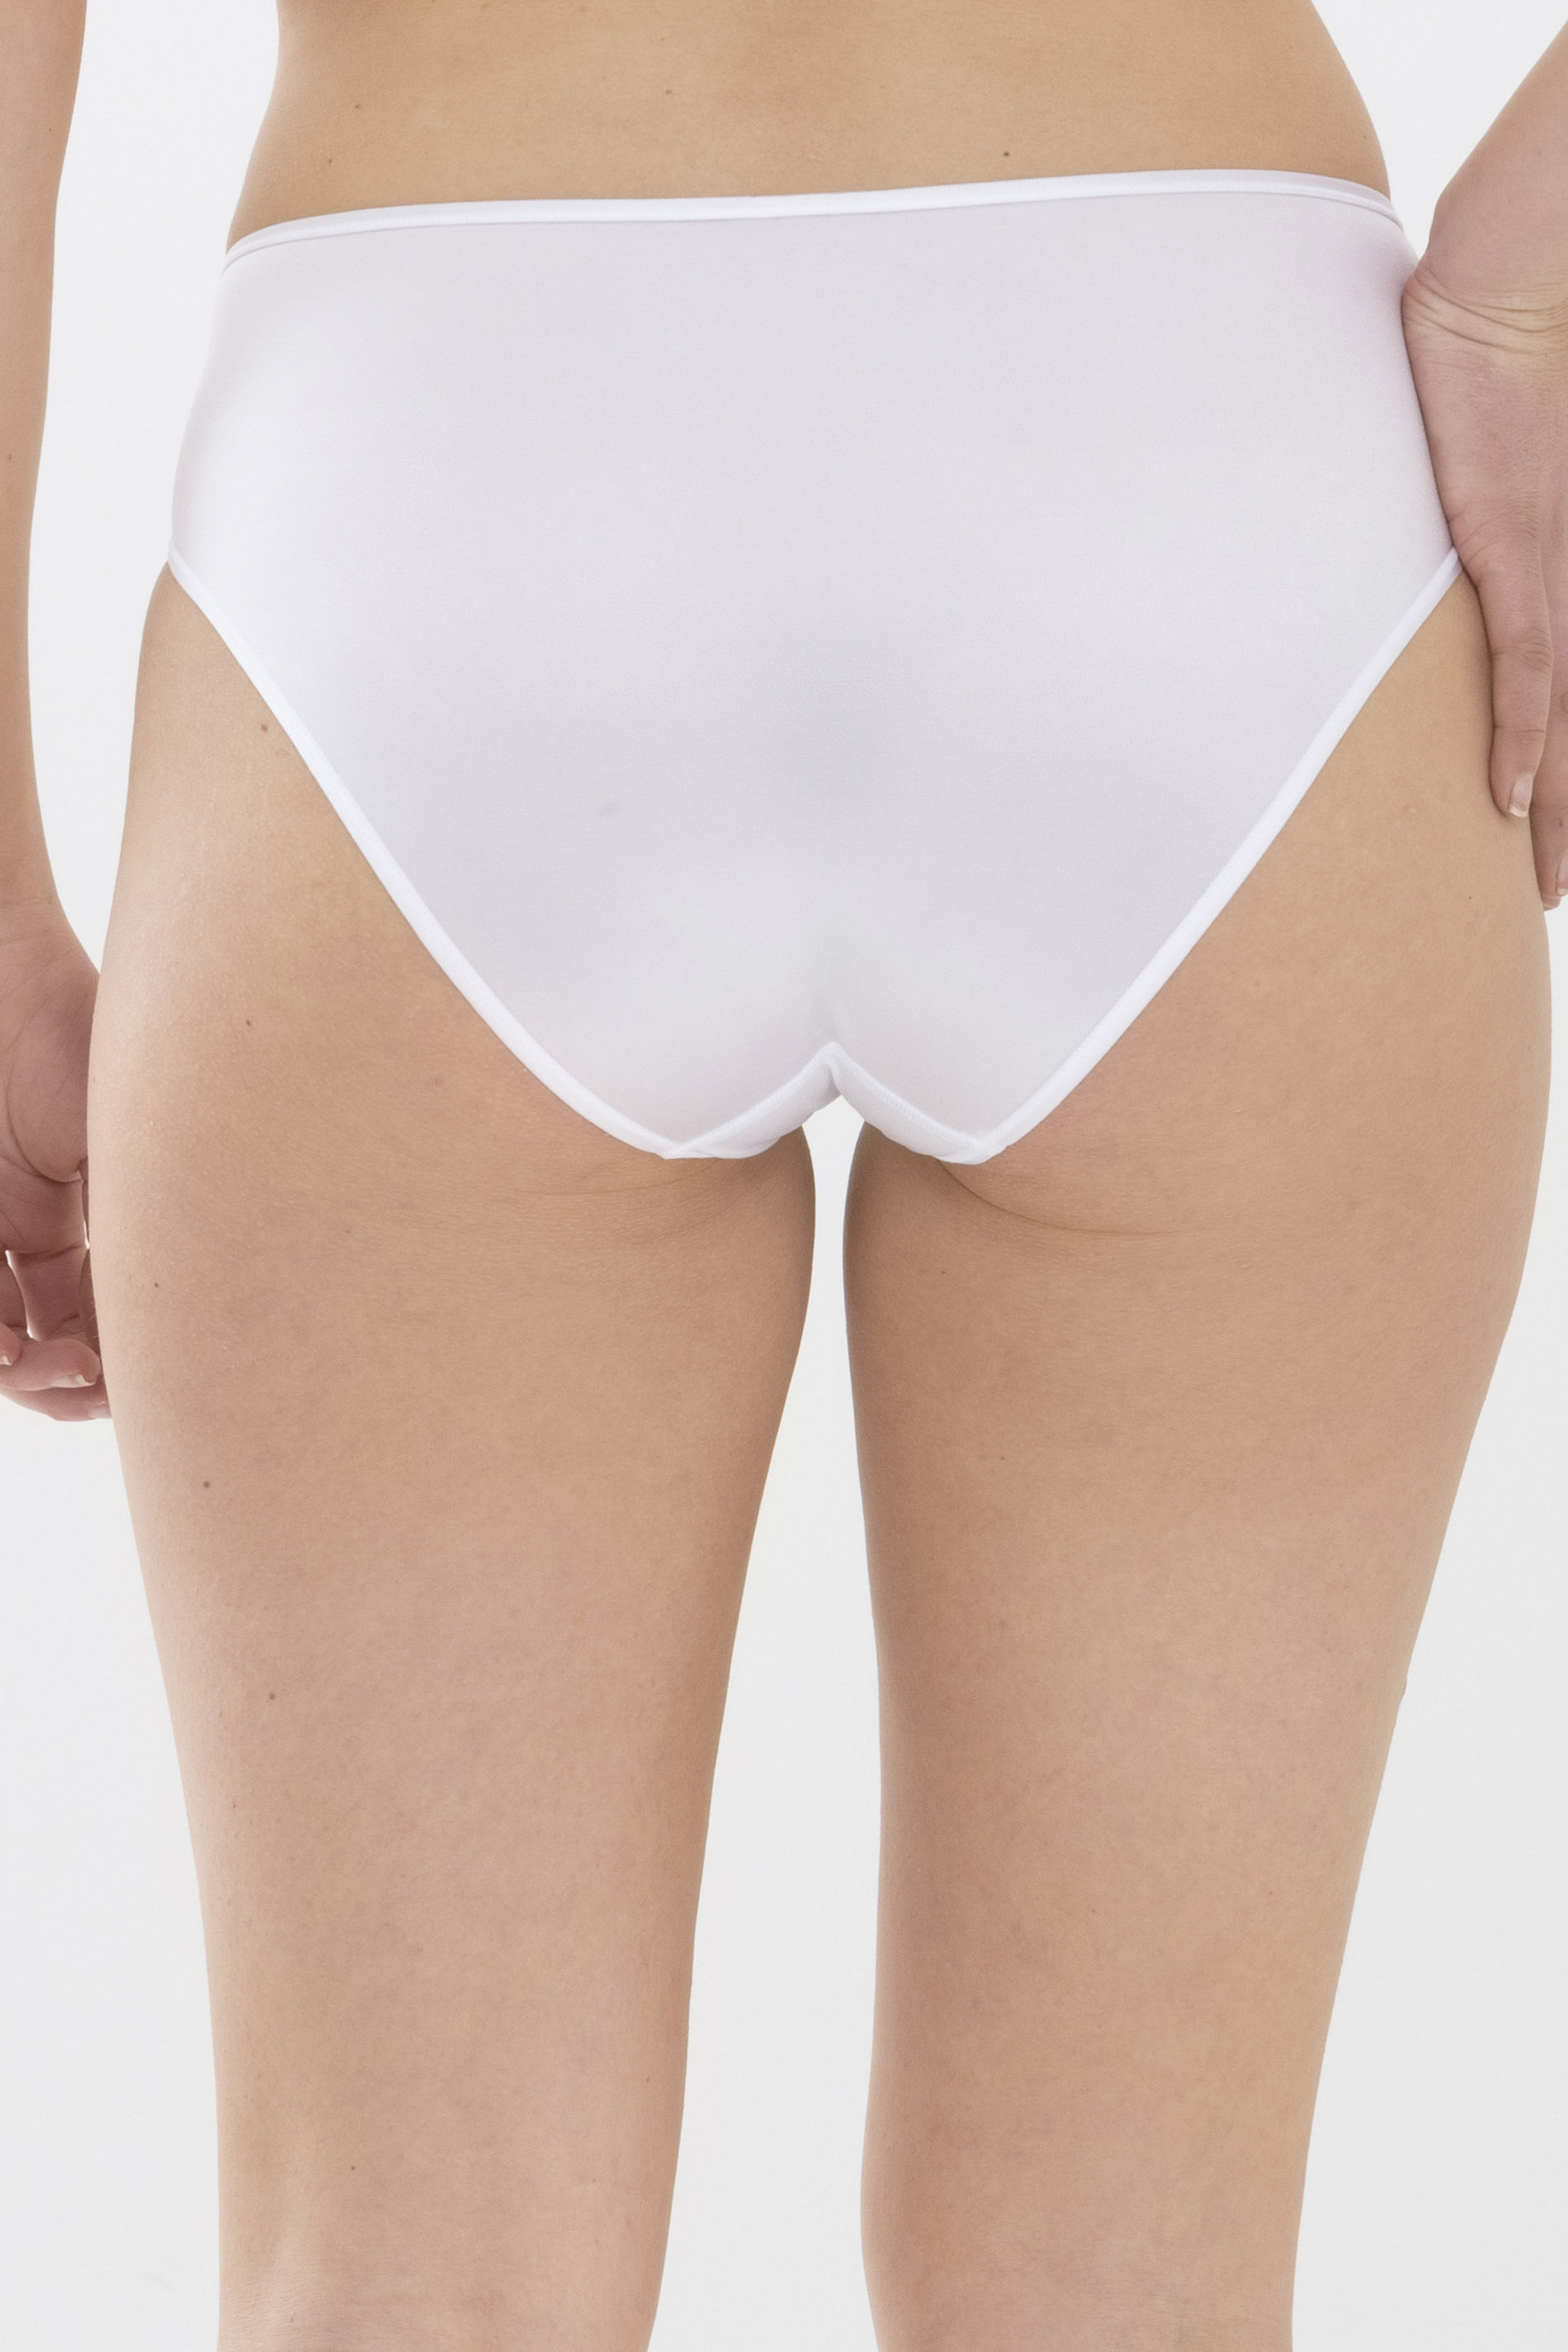 American-pants Wit Serie Joan Achteraanzicht | mey®